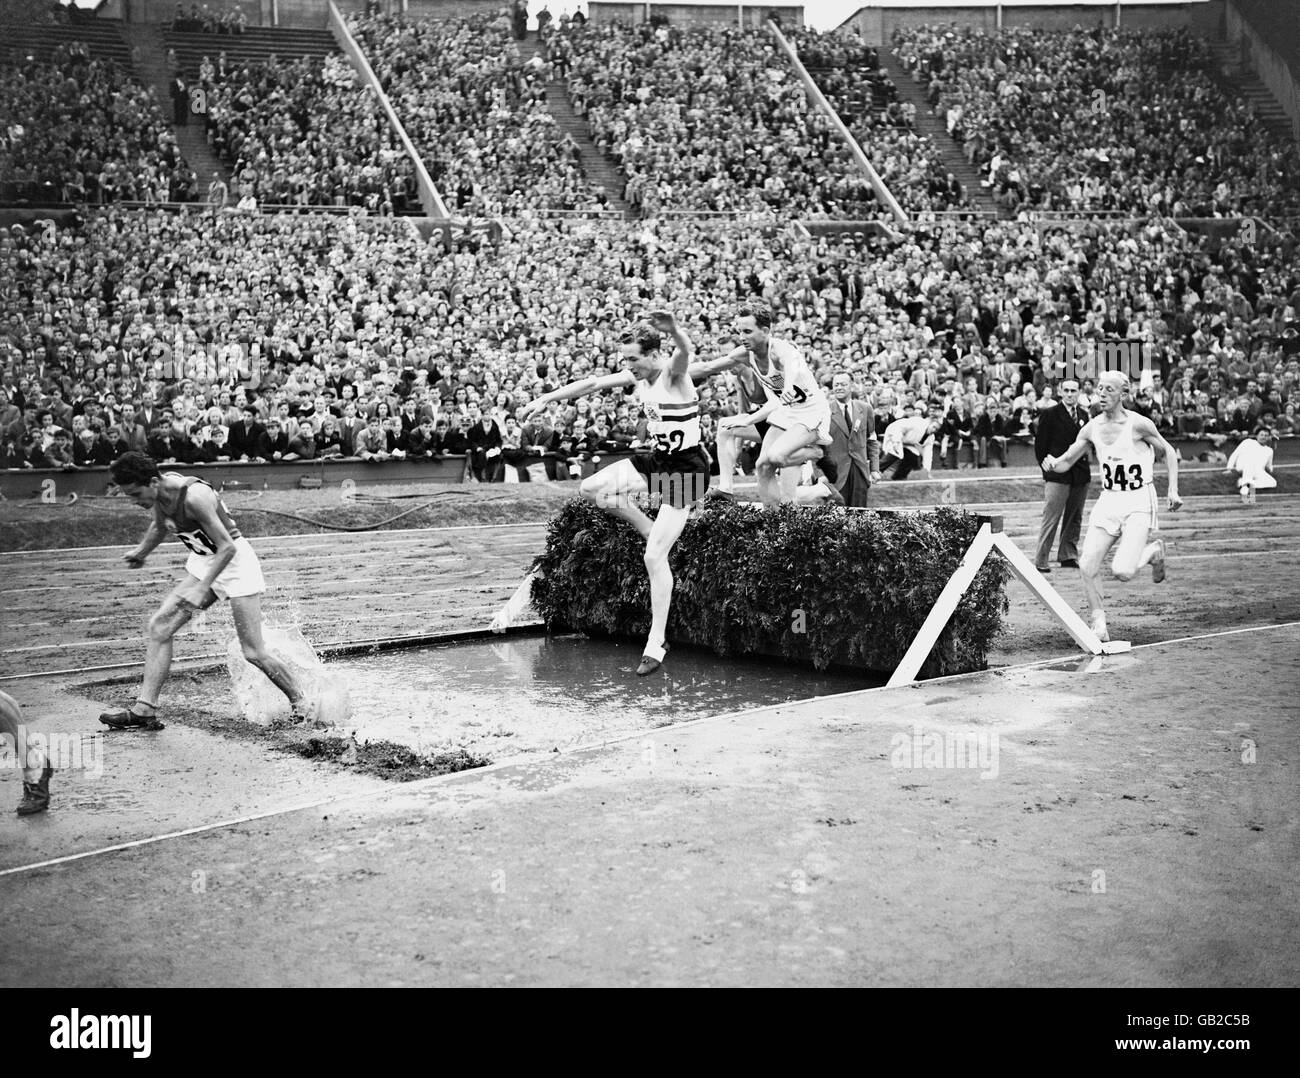 Giochi Olimpici di Londra 1948 - Atletica - Steeplechase - Wembley. I concorrenti che superano uno dei salti d'acqua durante uno dei riscaldatori degli uomini Steeplechase 3000 m. Foto Stock